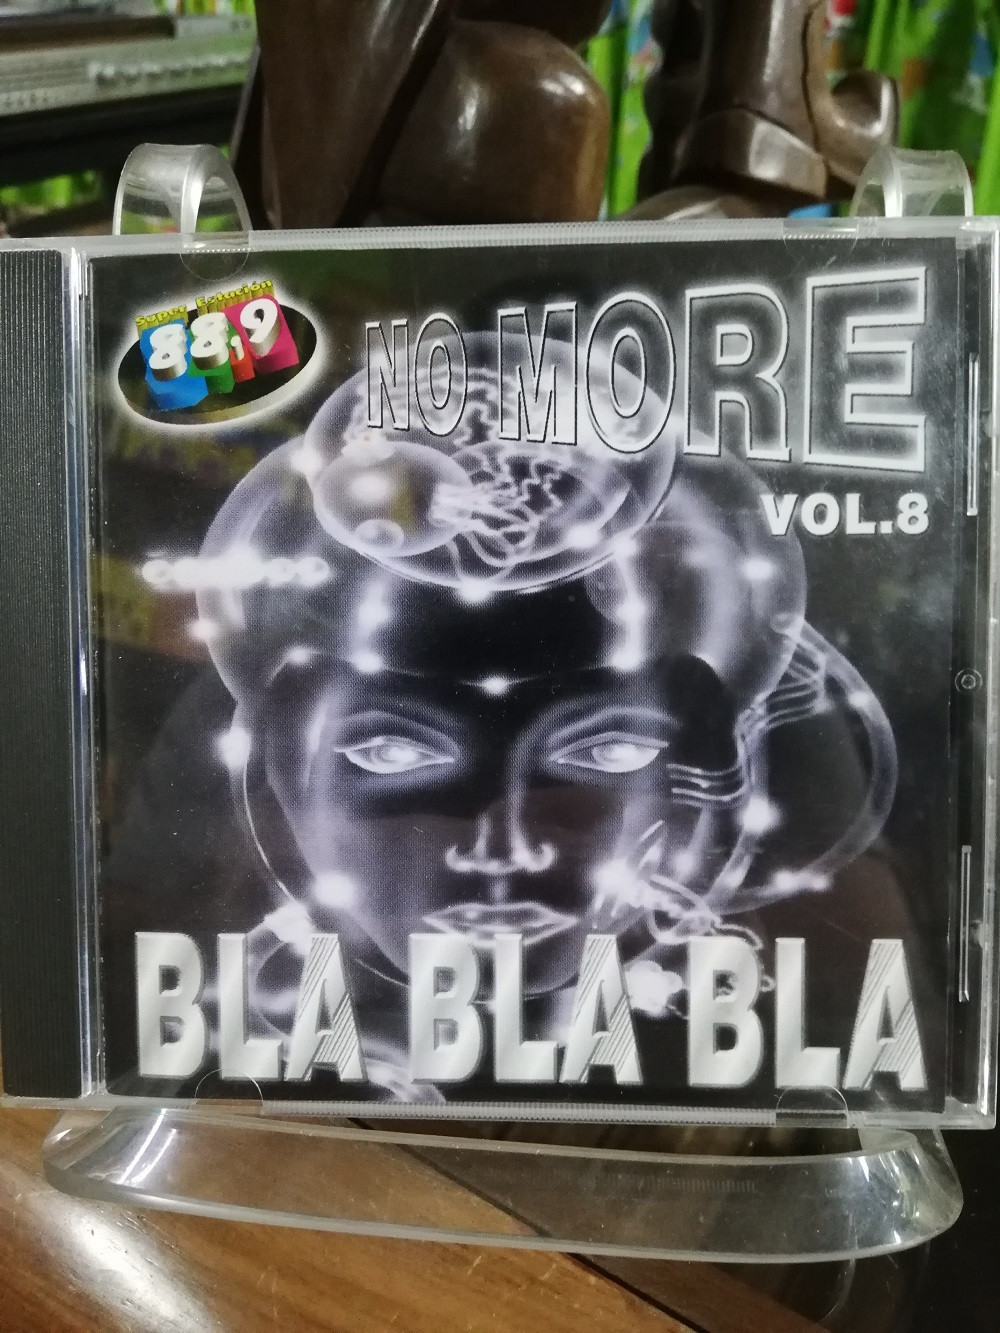 Imagen CD NO MORE BLA BLA BLA - NO MORE BLA BLA BLA VOL. 8